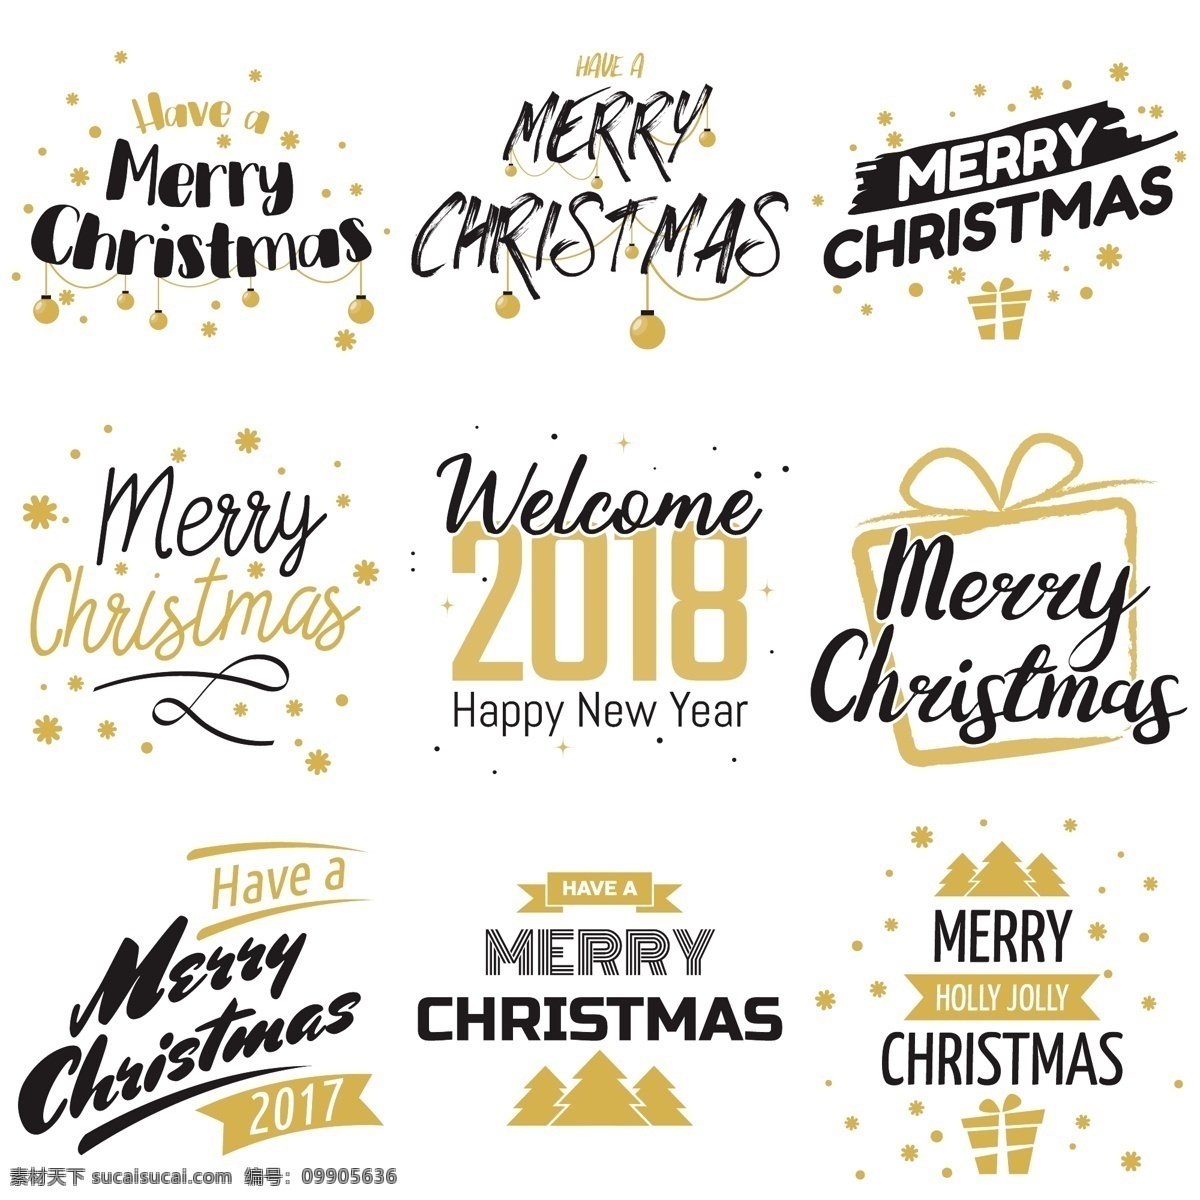 圣诞节 艺术 字体 艺术字体 圣诞节标签 标志 图标 圣诞节字体 英文字体 字体设计 圣诞快乐